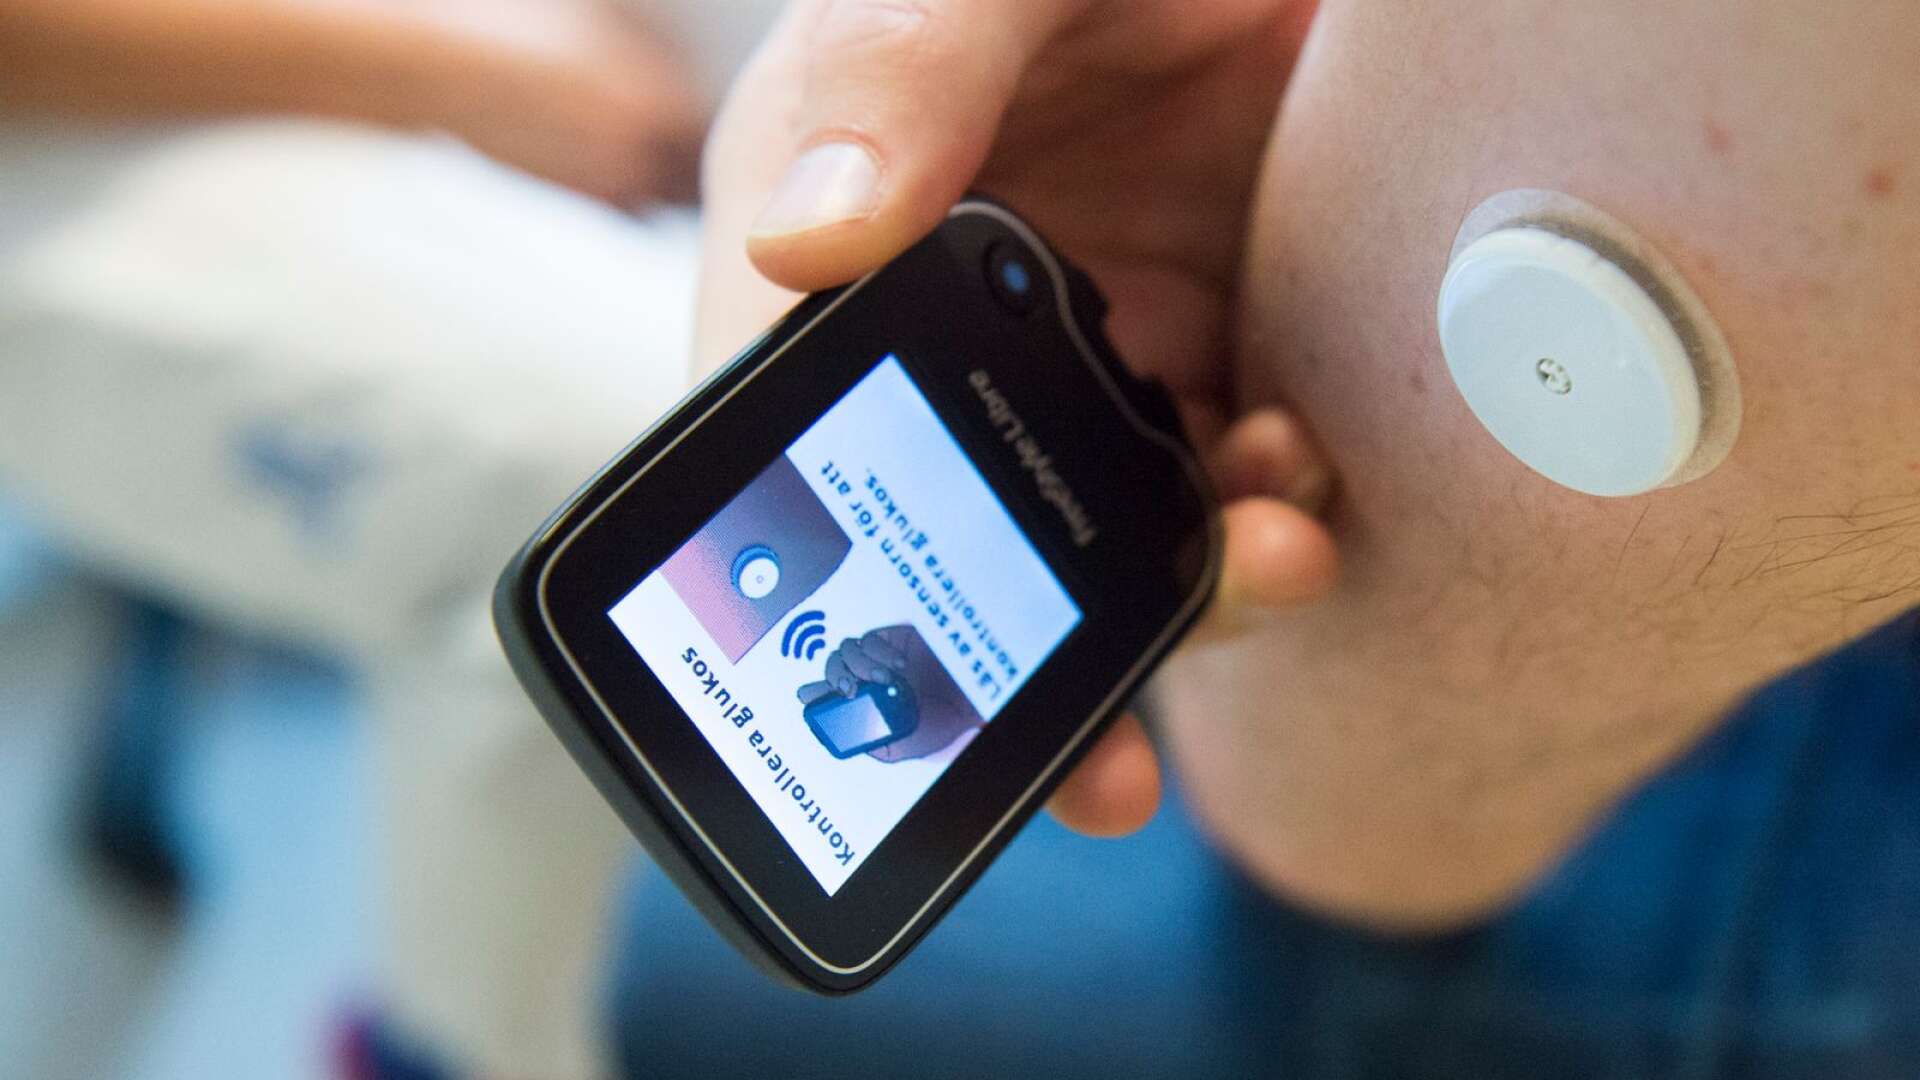 Kontinuerlig mätning av blodsockret, till exempel genom en sensor på armen som mäter blodsockervärdet under hela dygnet ger bättre kontroll jämfört med att regelbundet sticka sig i fingret, skriver Örjan Arwidsson.